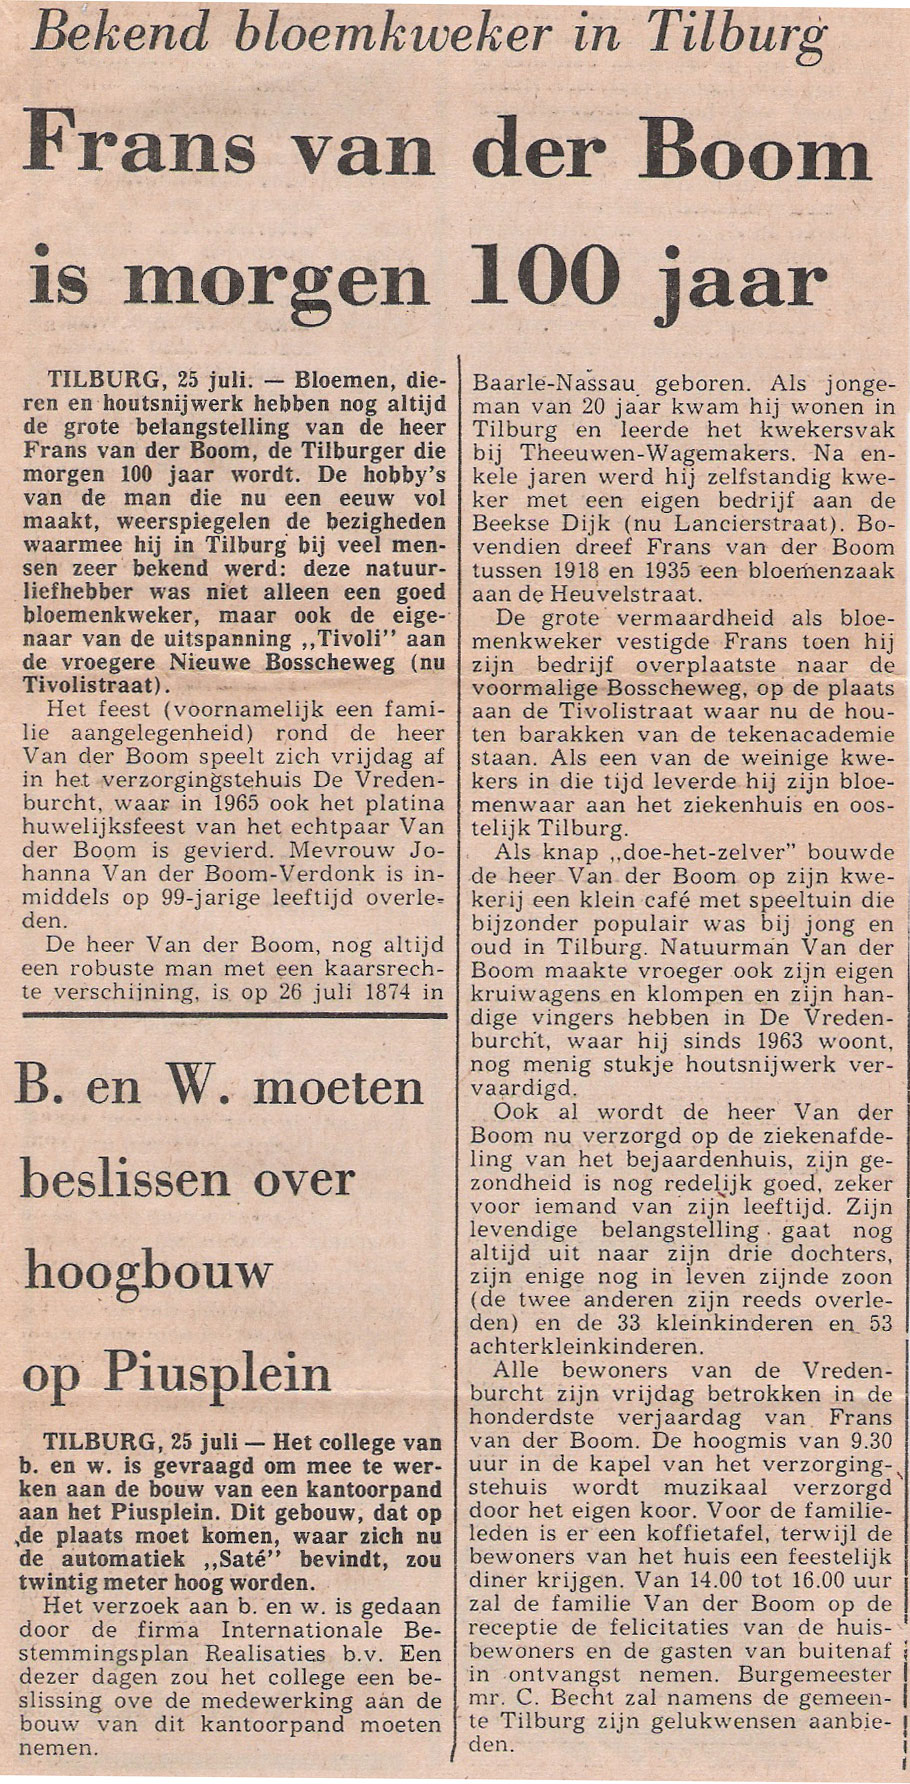 Krantenartikel in Het Nieuwsblad van het Zuiden (25 juli 1974) n.a.v. 100ste verjaardag Frans van der Boom.